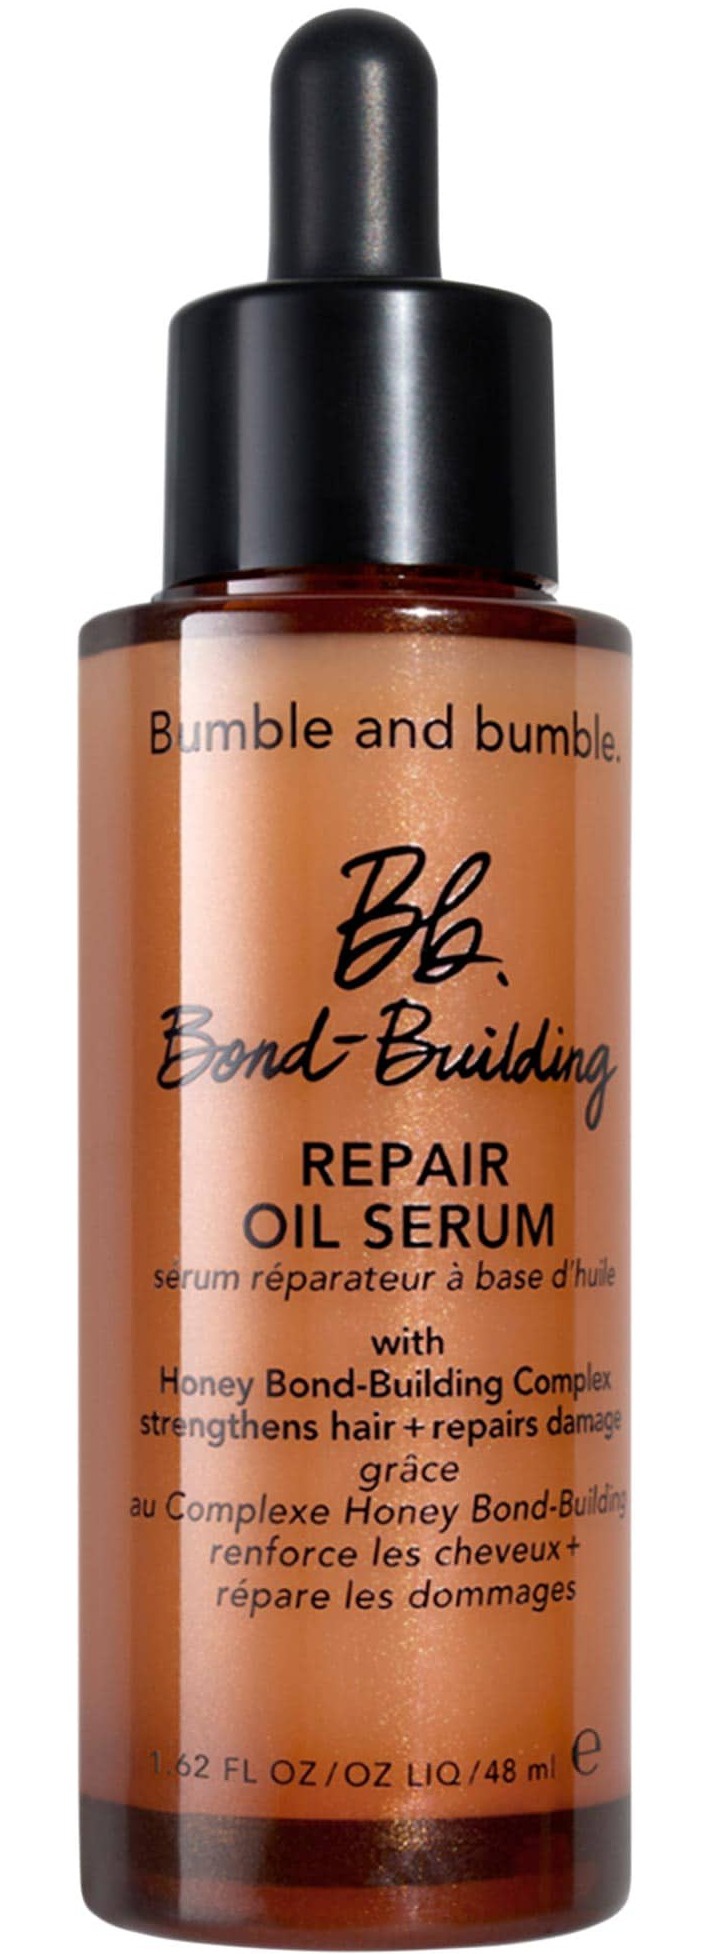 Bumble & Bumble Bond Buildling Repair Oil